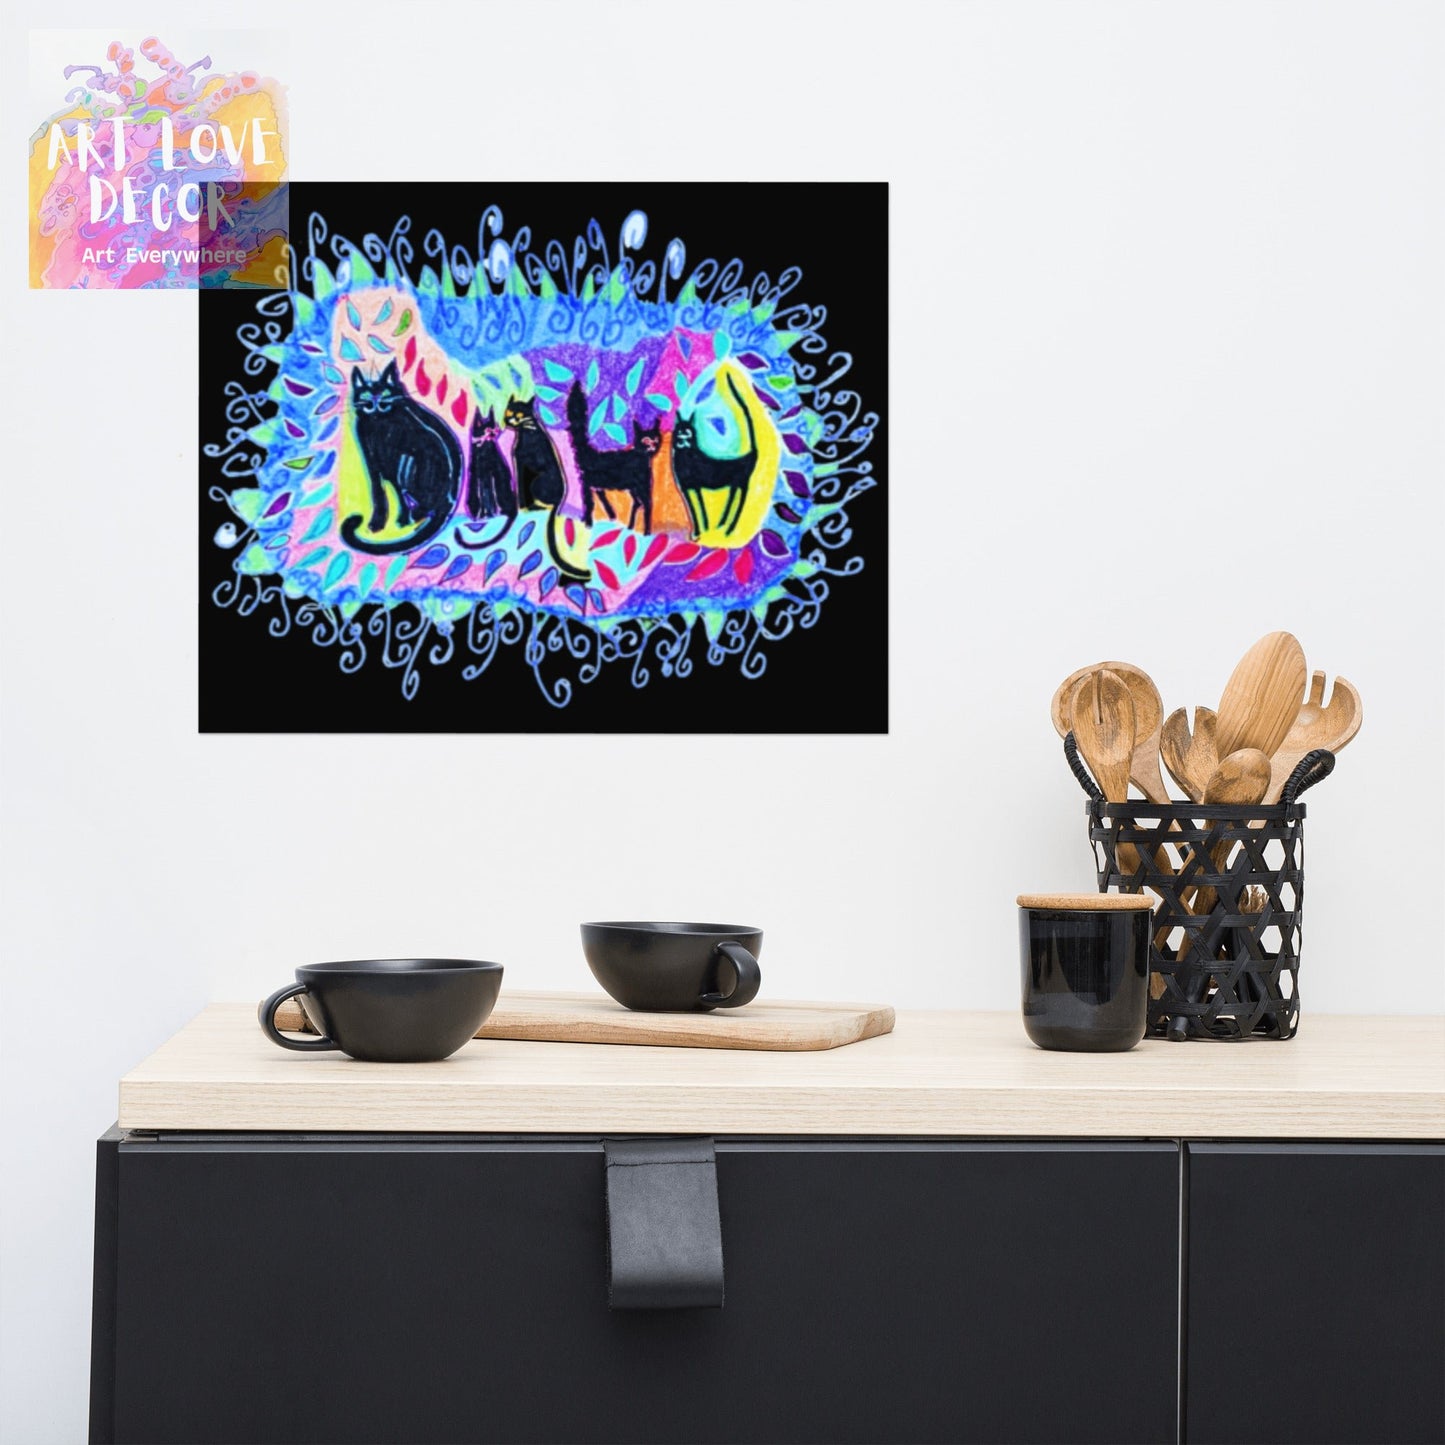 Five Black Cats Poster Unframed - Art Love Decor